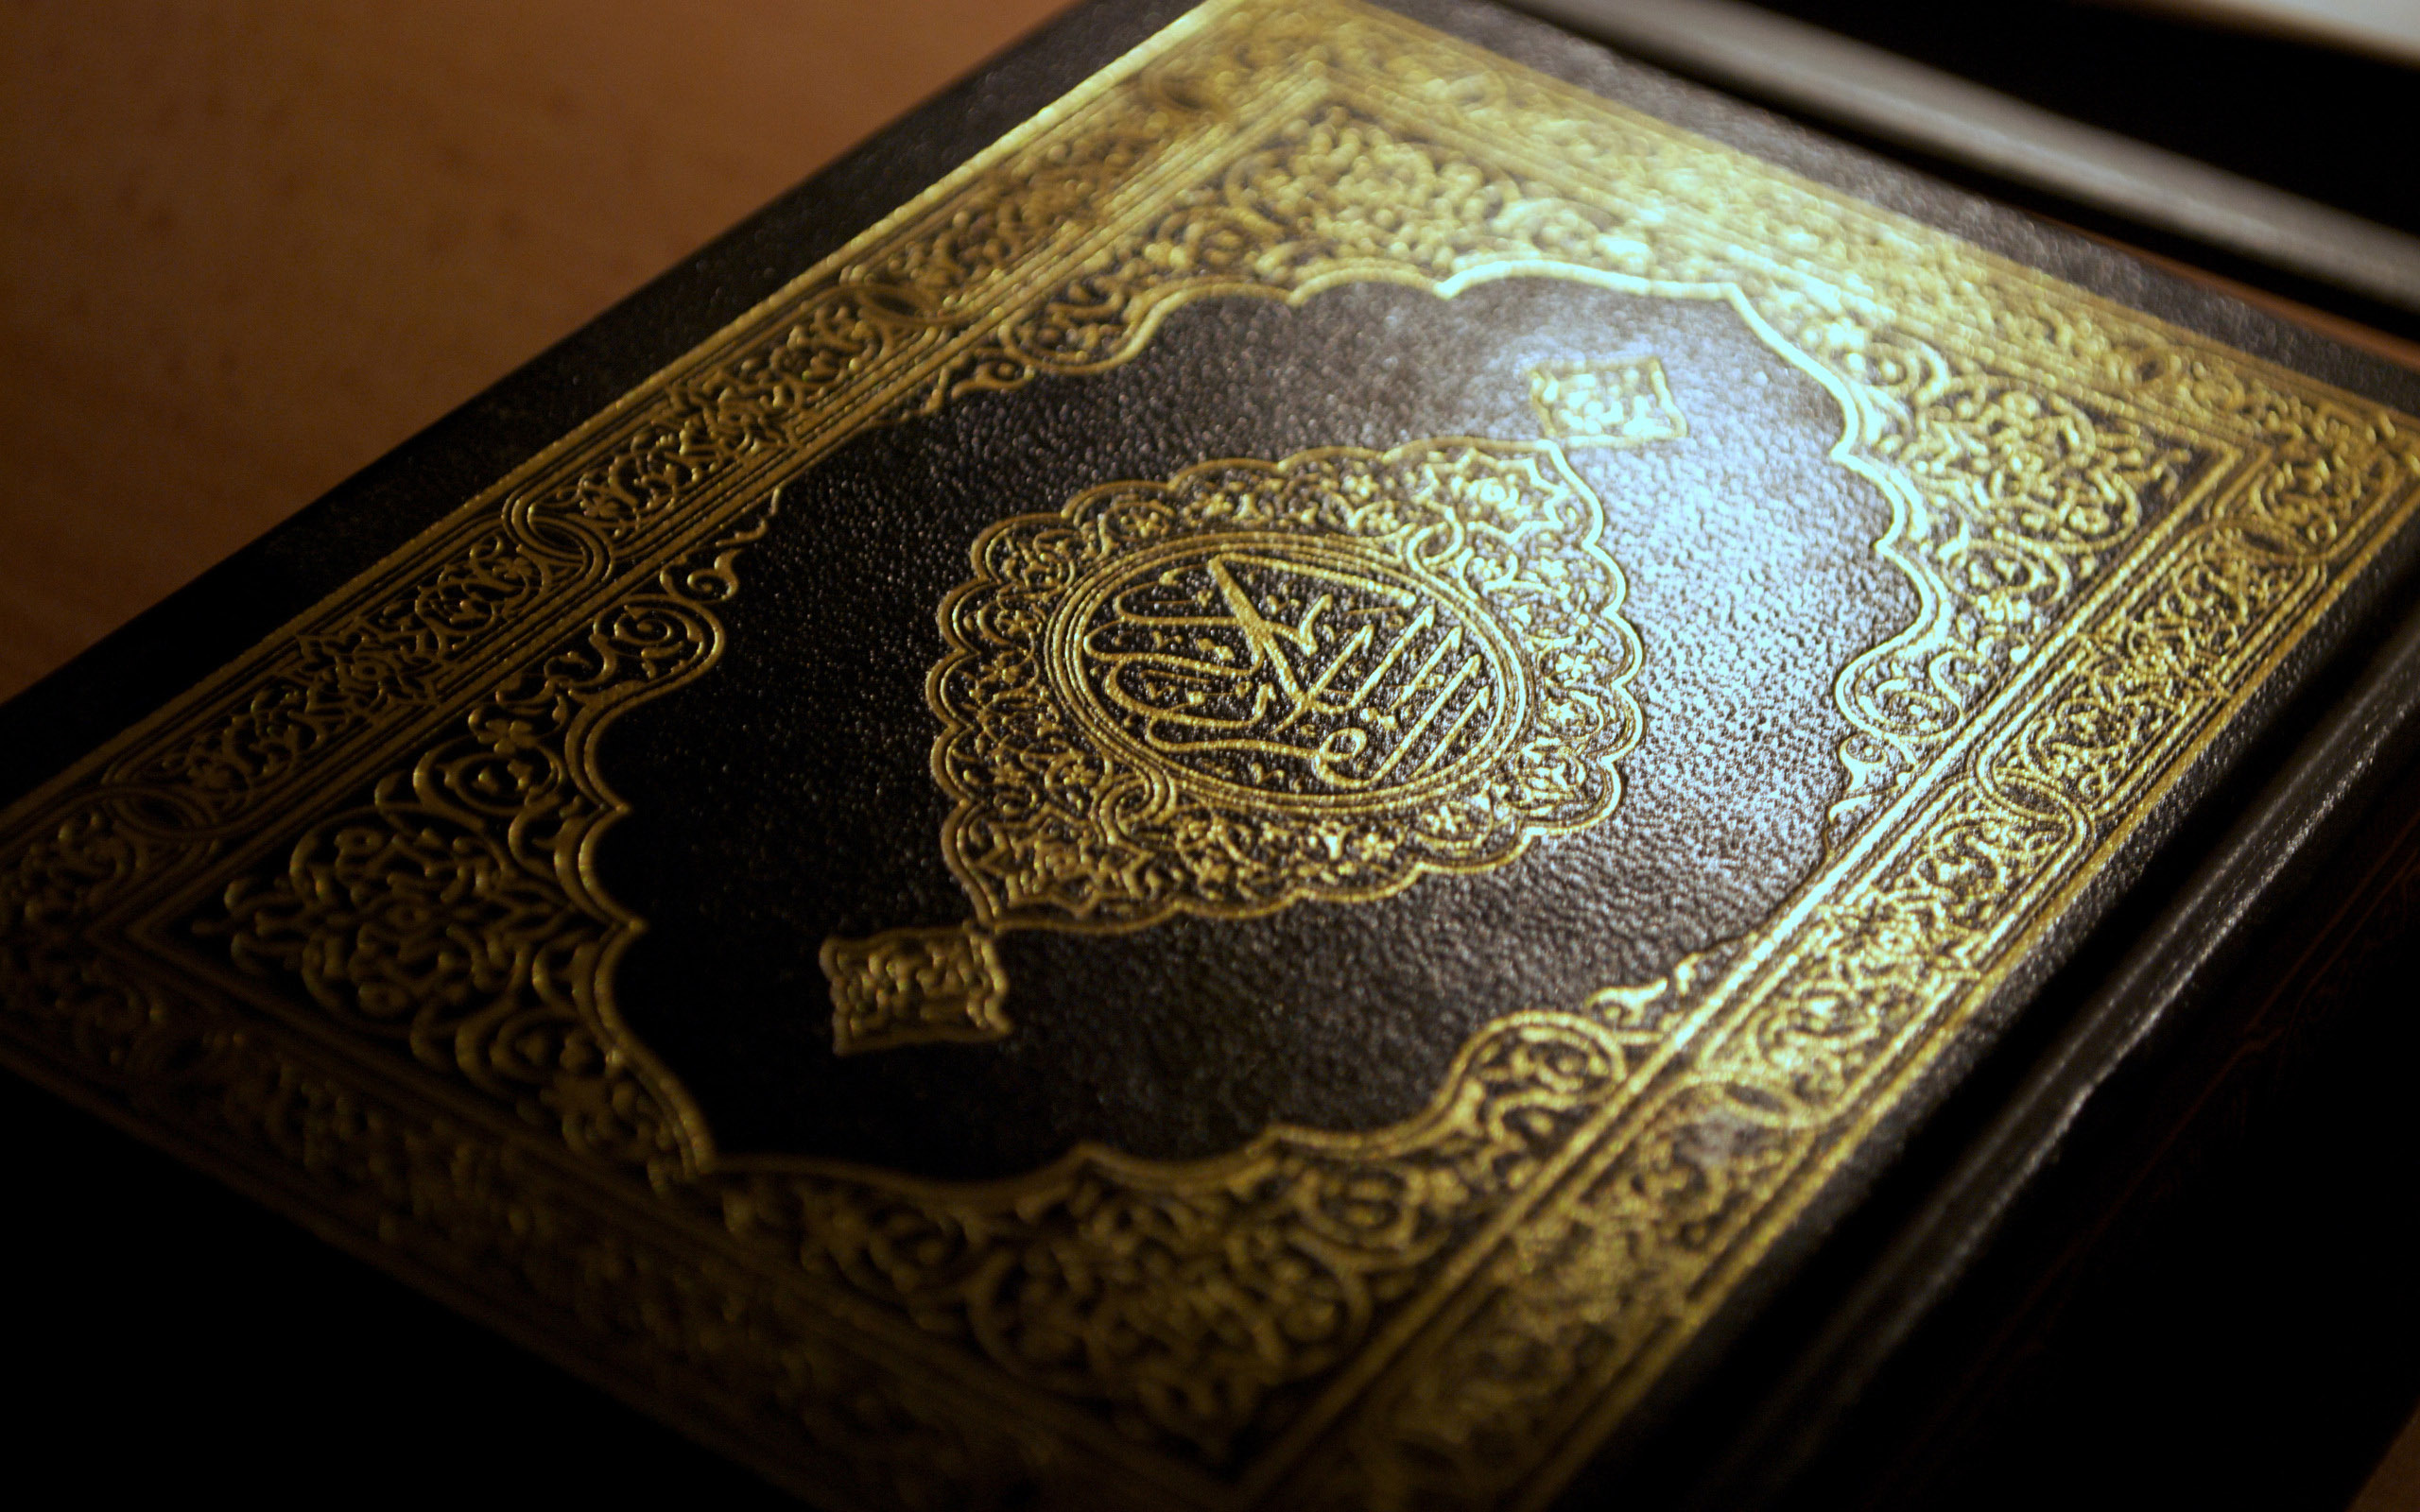 خلفيات كمبيوتر اسلامية لسطح المكتب بجودة عالية الوضوح Wallpapers Islamic hd